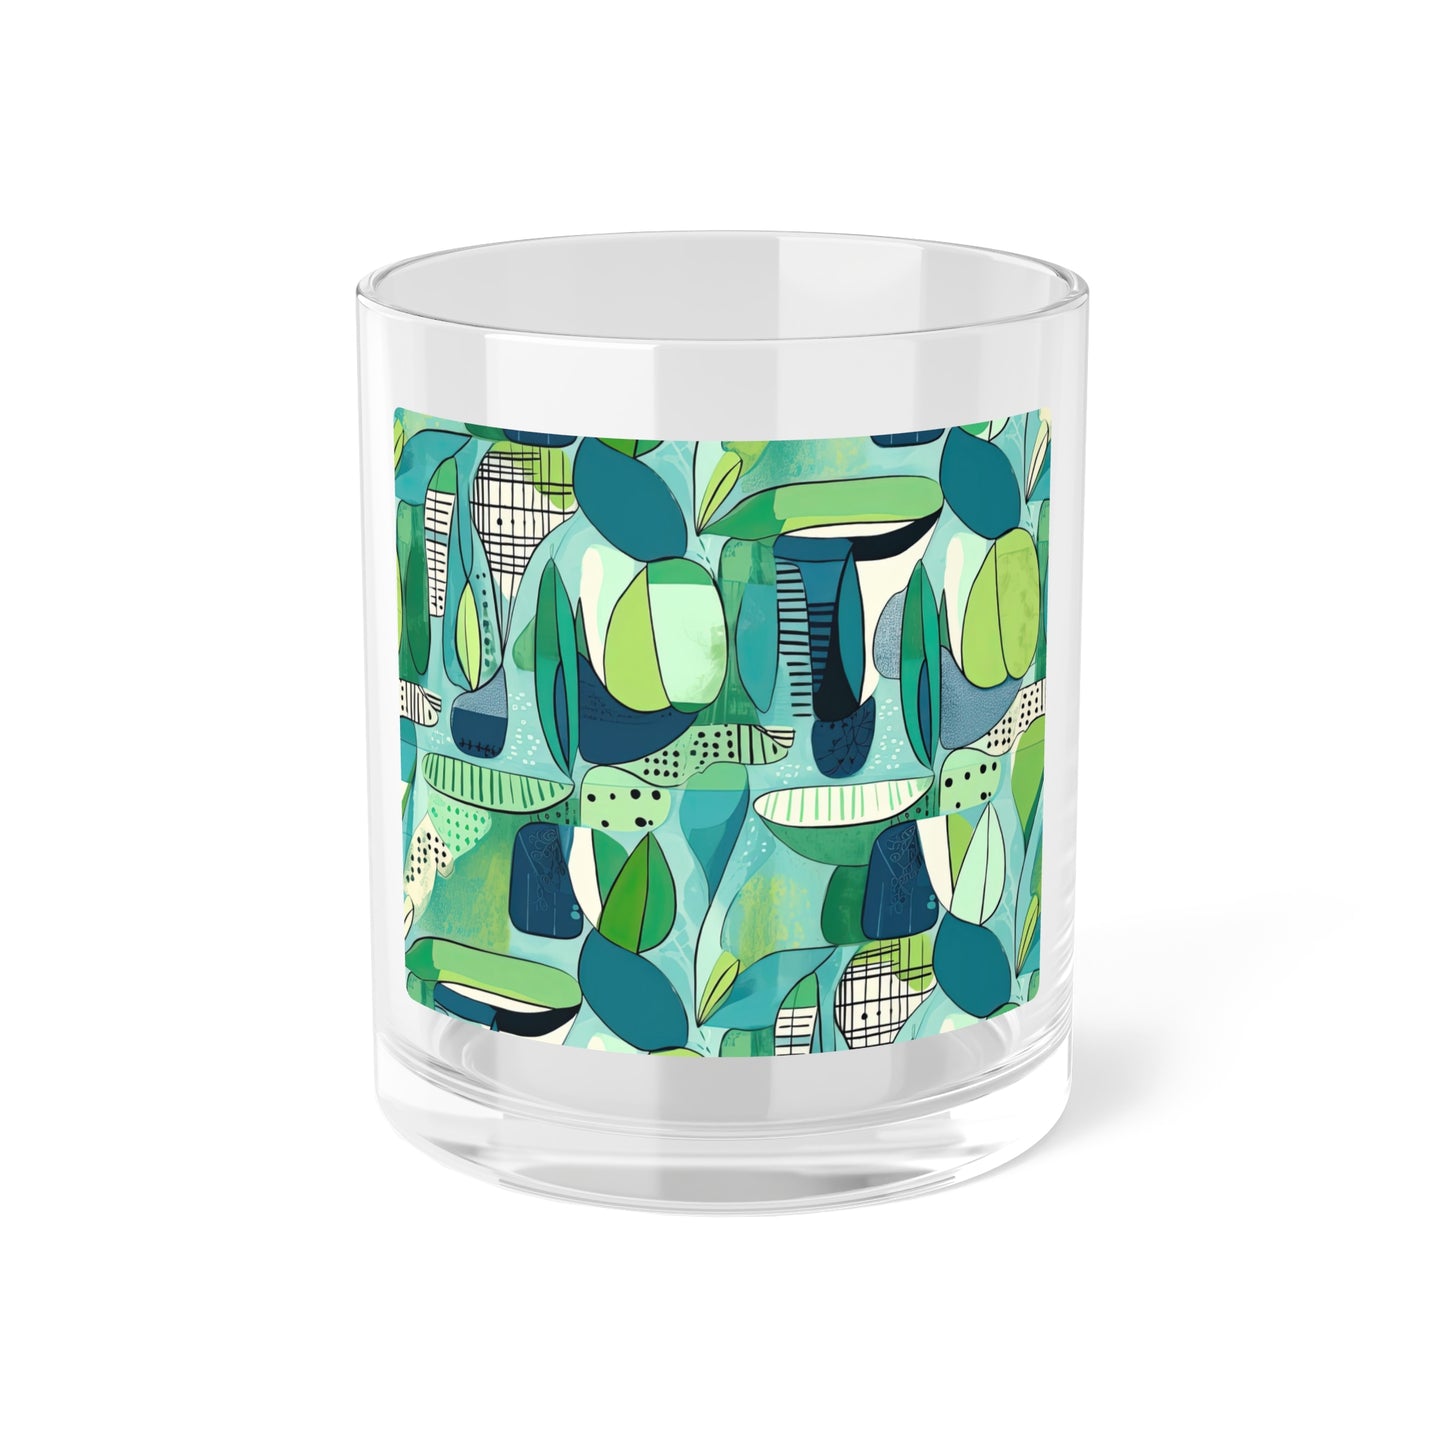 Cubist Midcentury Modern Garden Pattern Blue Green Cocktail Party Entertaining Highball Bar Glass